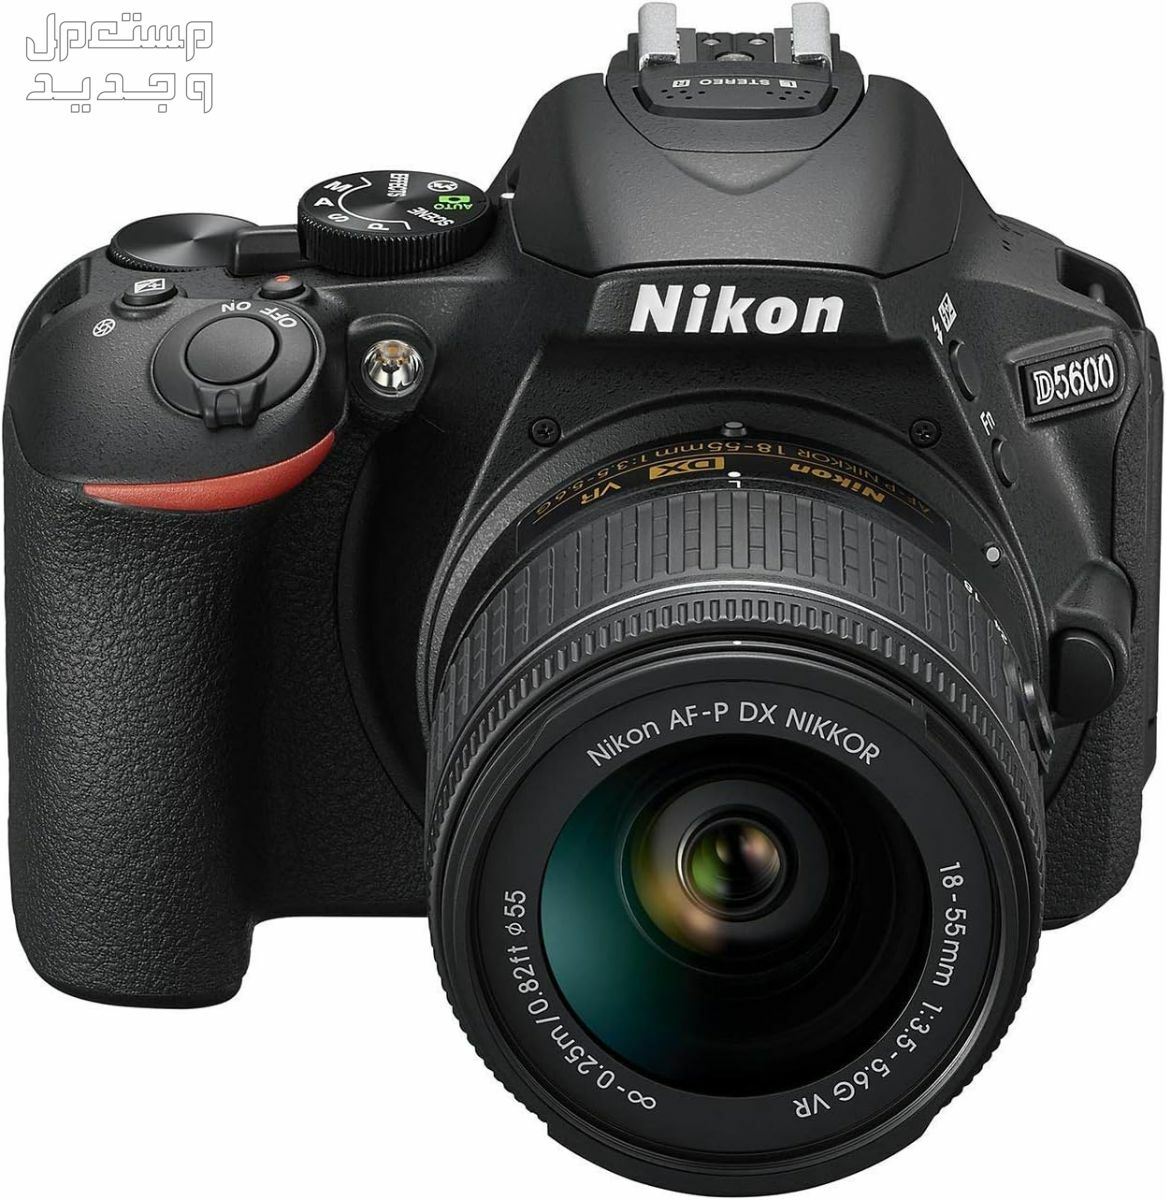 10 كاميرات تصوير ماركات عالمية بأسعار رخيصة في الجزائر سعر كاميرا Nikon D5600